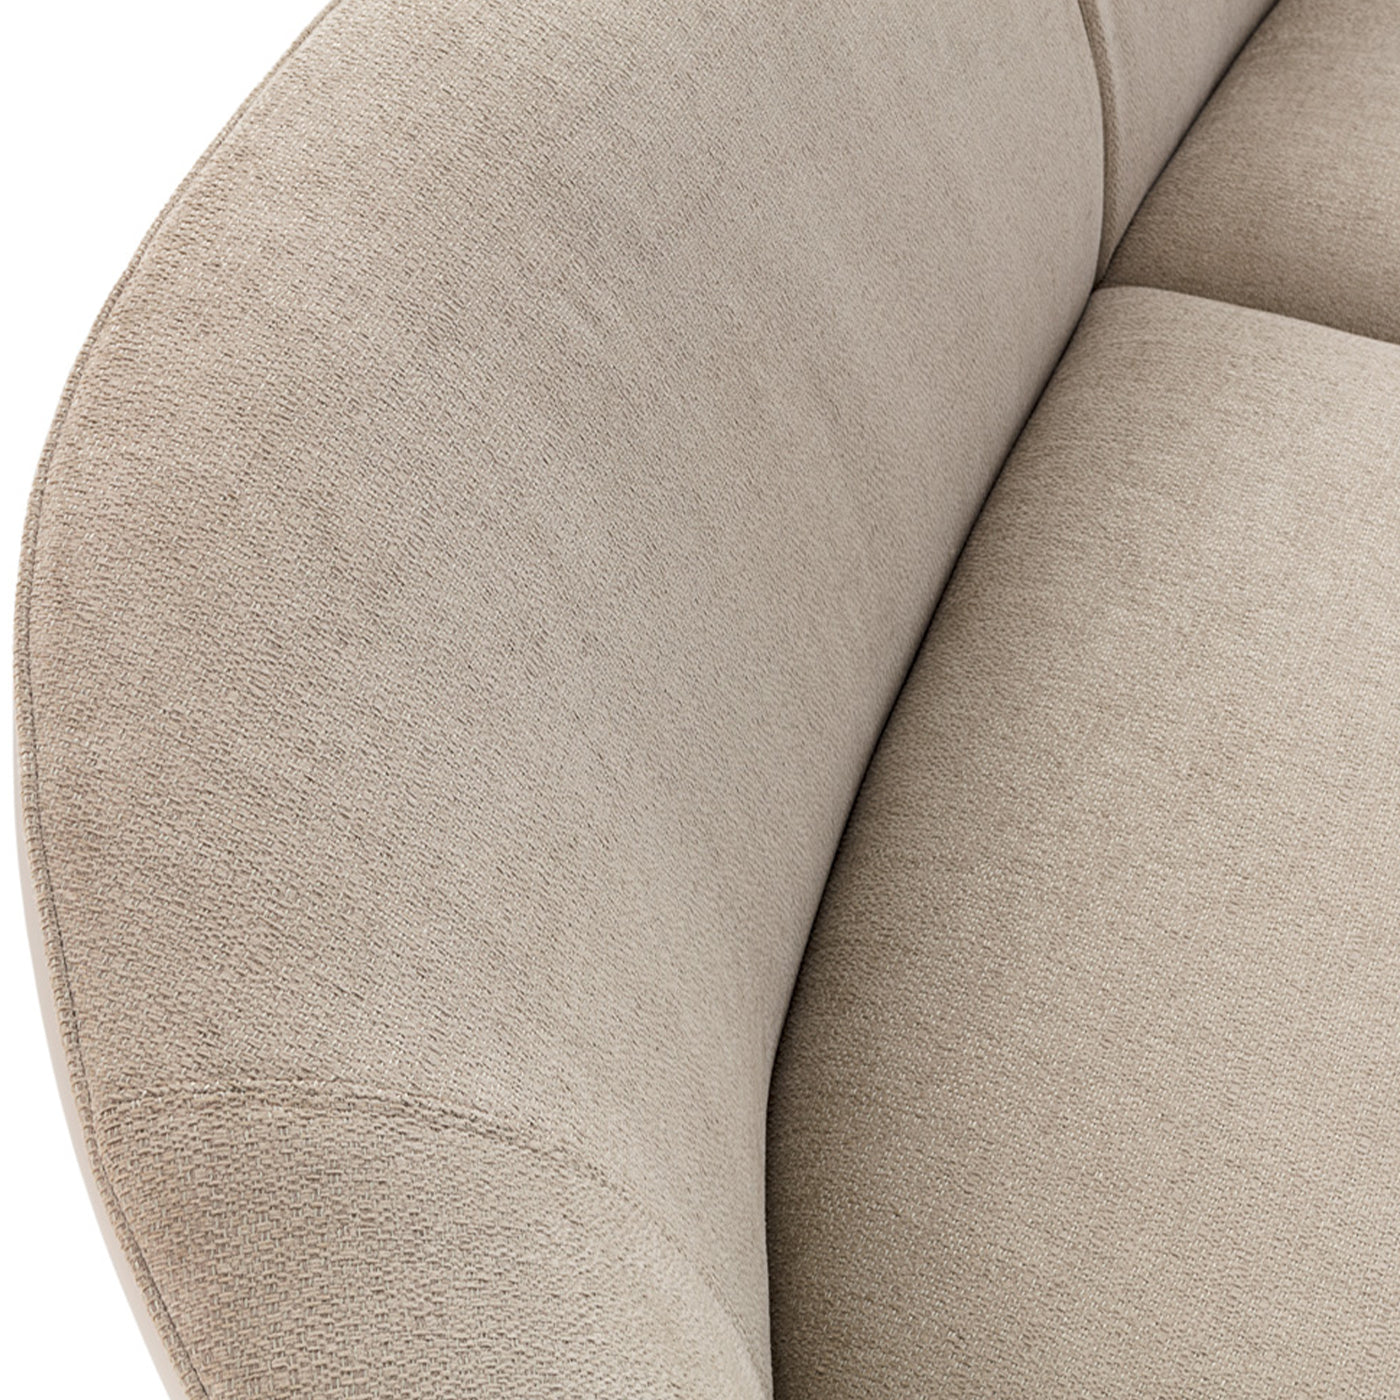 Prestige Modular Sofa - White #4 - Alternative view 1